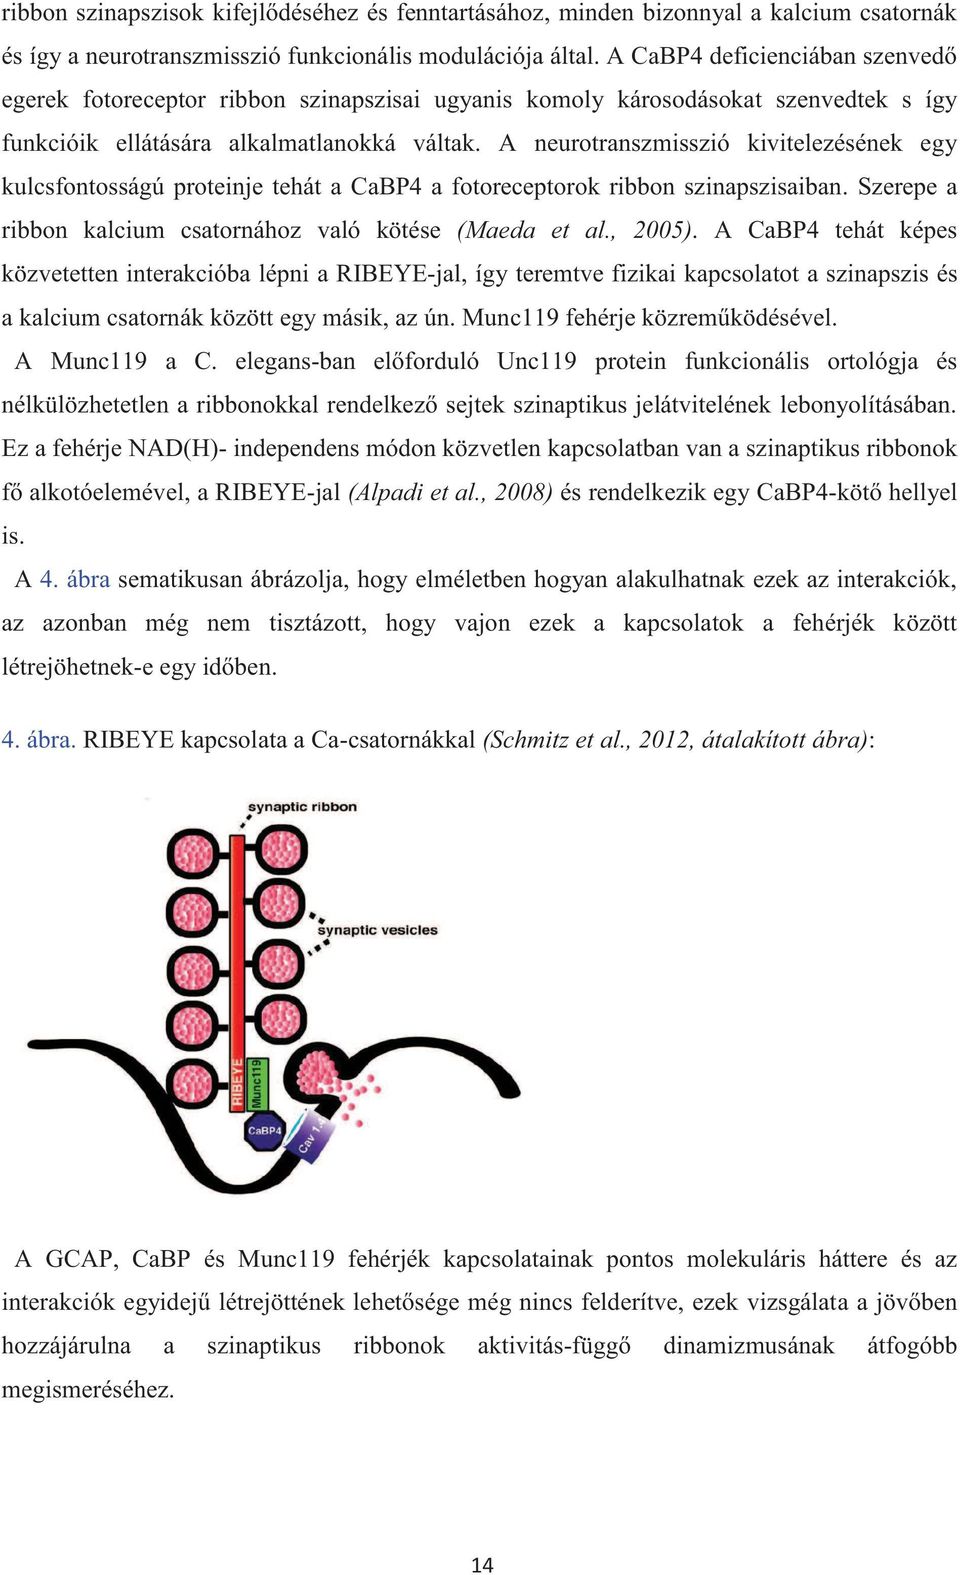 A neurotranszmisszió kivitelezésének egy kulcsfontosságú proteinje tehát a CaBP4 a fotoreceptorok ribbon szinapszisaiban. Szerepe a ribbon kalcium csatornához való kötése (Maeda et al., 2005).